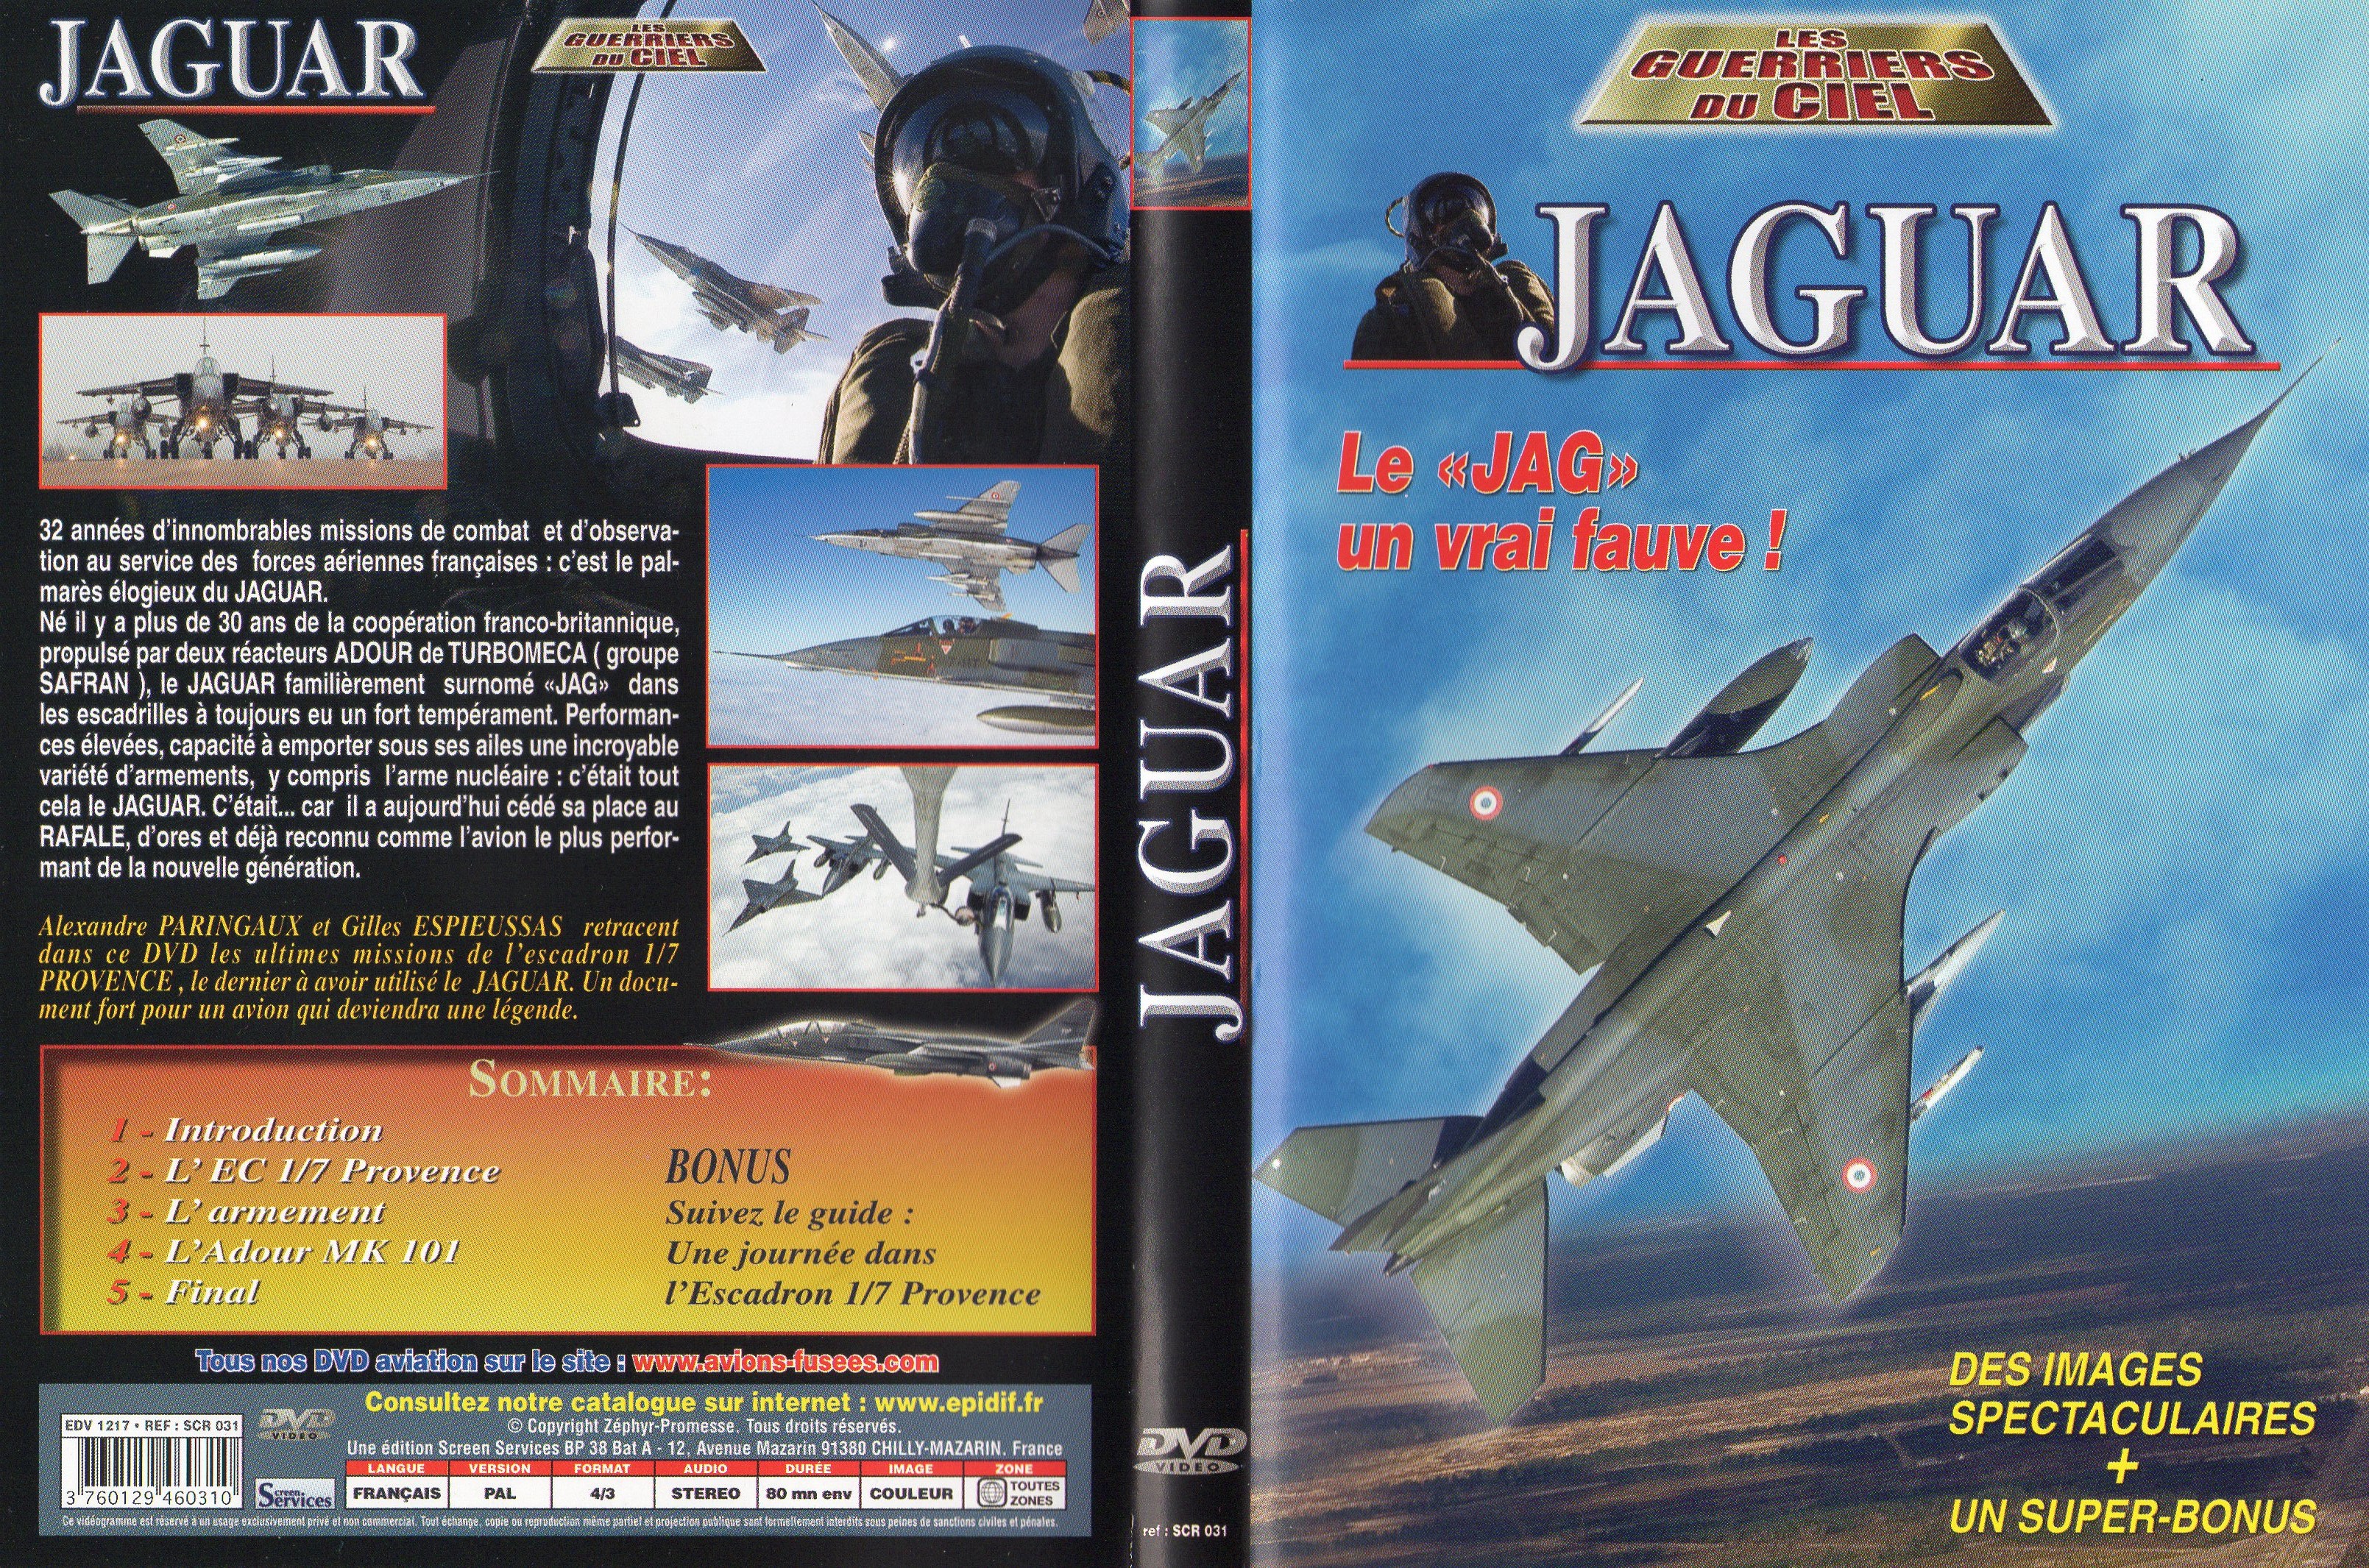 Jaquette DVD Les guerriers du ciel - Jaguar